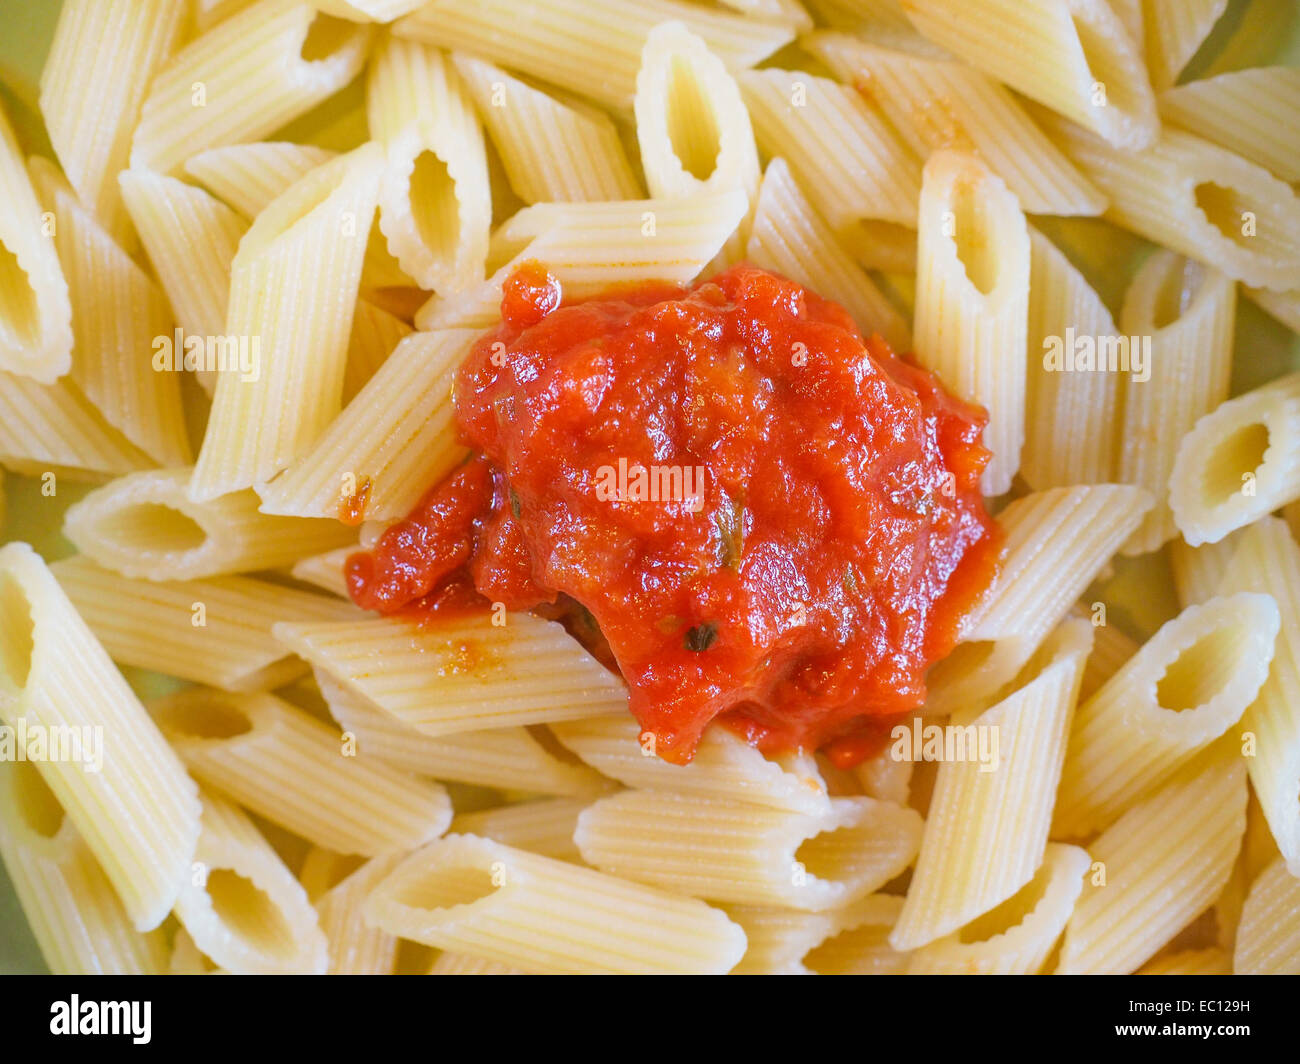 Les pâtes italiennes al pomodoro sens tomate végétarienne de l'Italie Banque D'Images